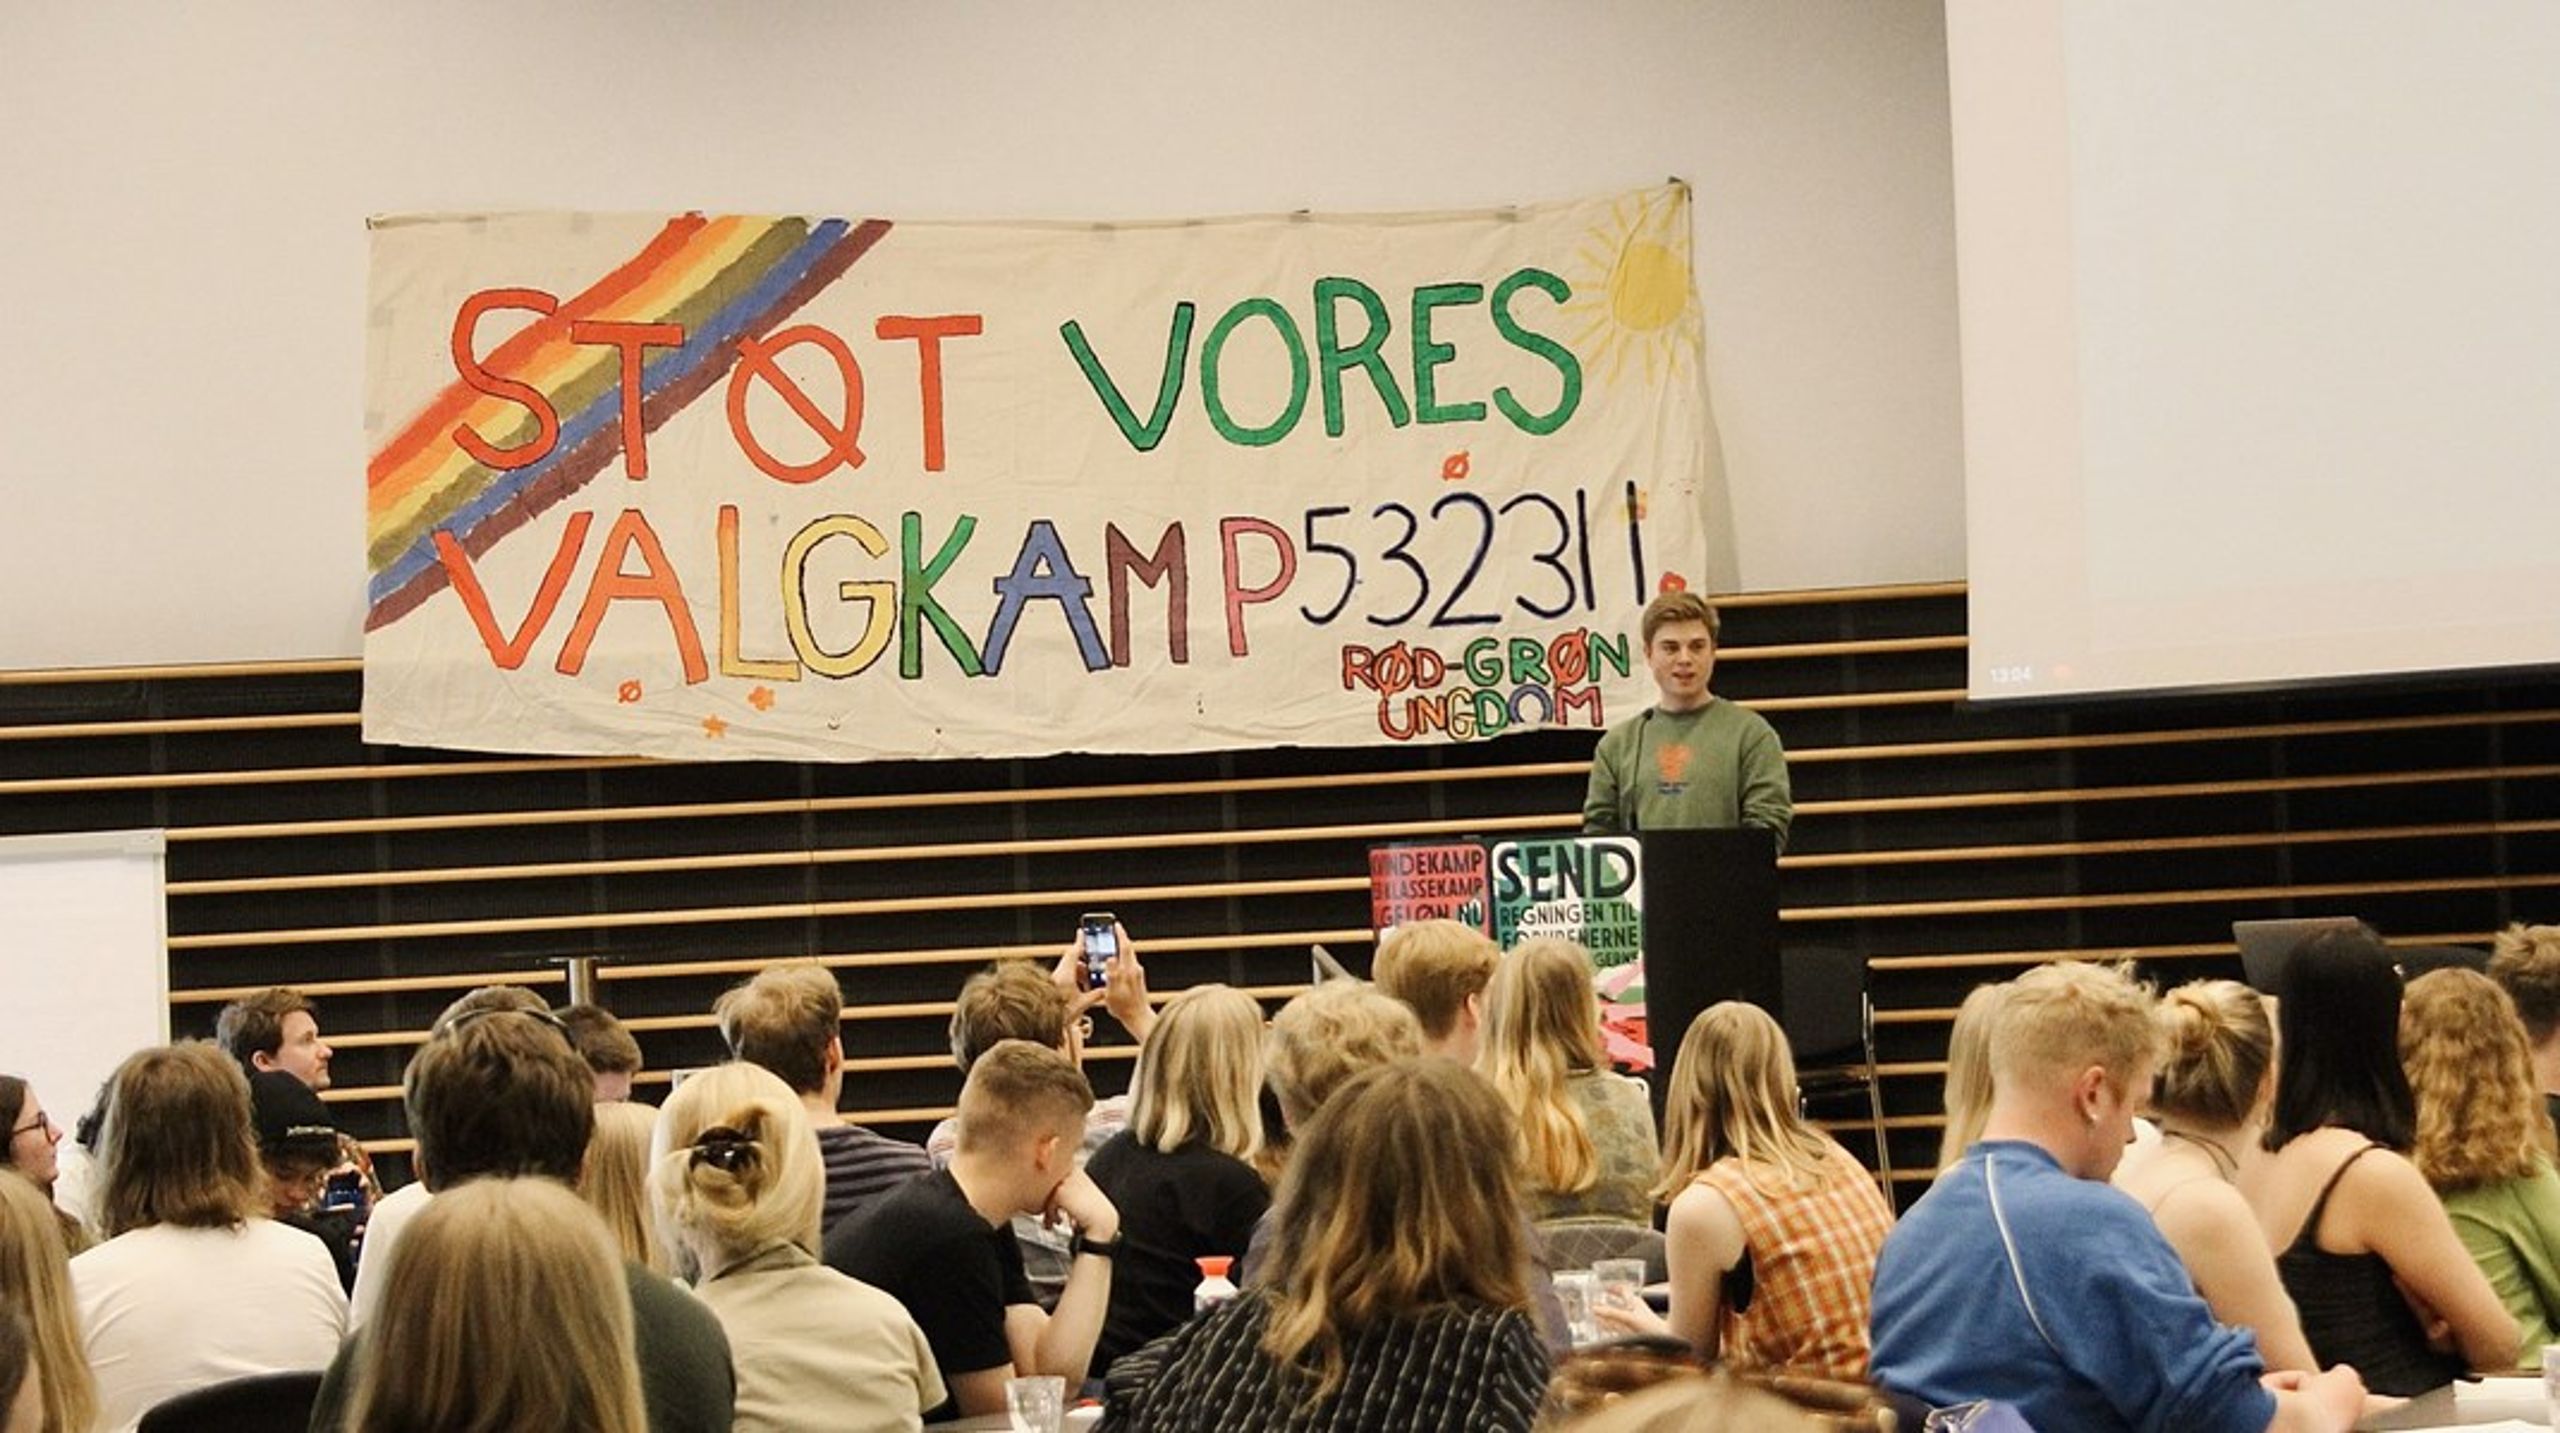 For Frederik Dahler blev splittelsen i venstrefløjen tydelig under folketingsvalget i 2019, der blev kaldt Danmarks første klimavalg.